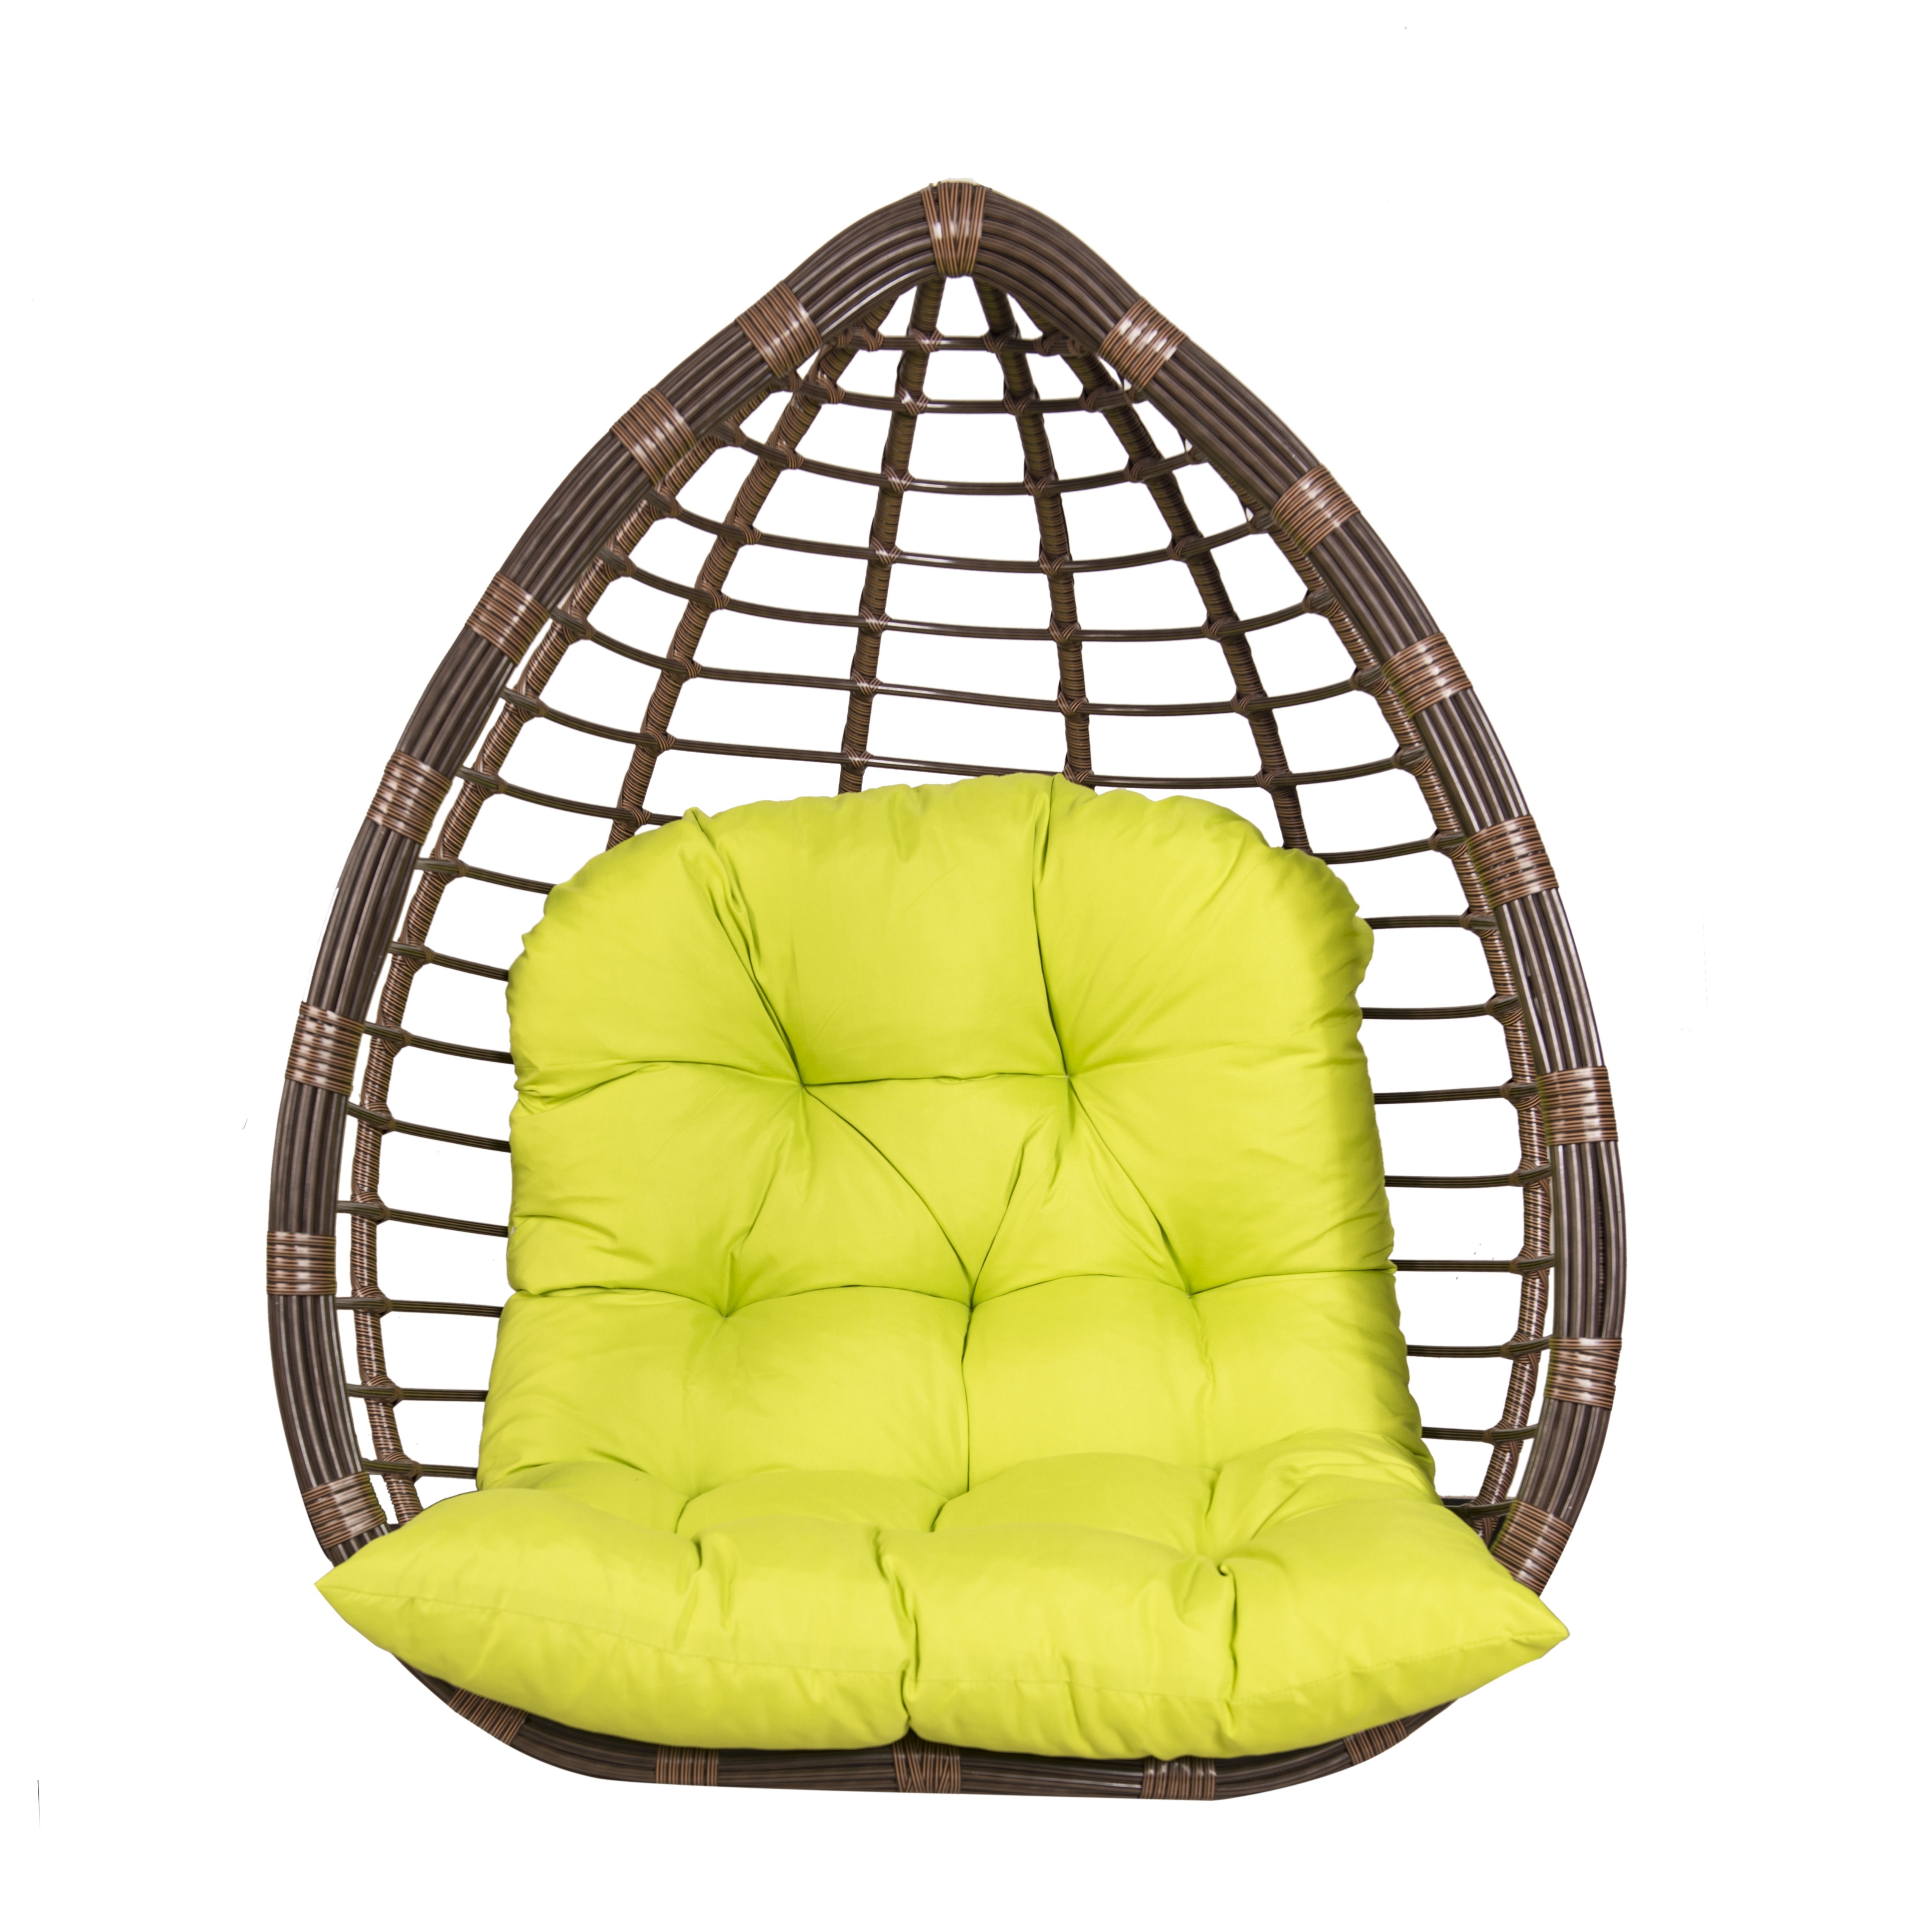 Cojines redondos para sillas, cojines de asiento de algodón y lino para  interiores y exteriores (amarillo, diámetro 45 cm)